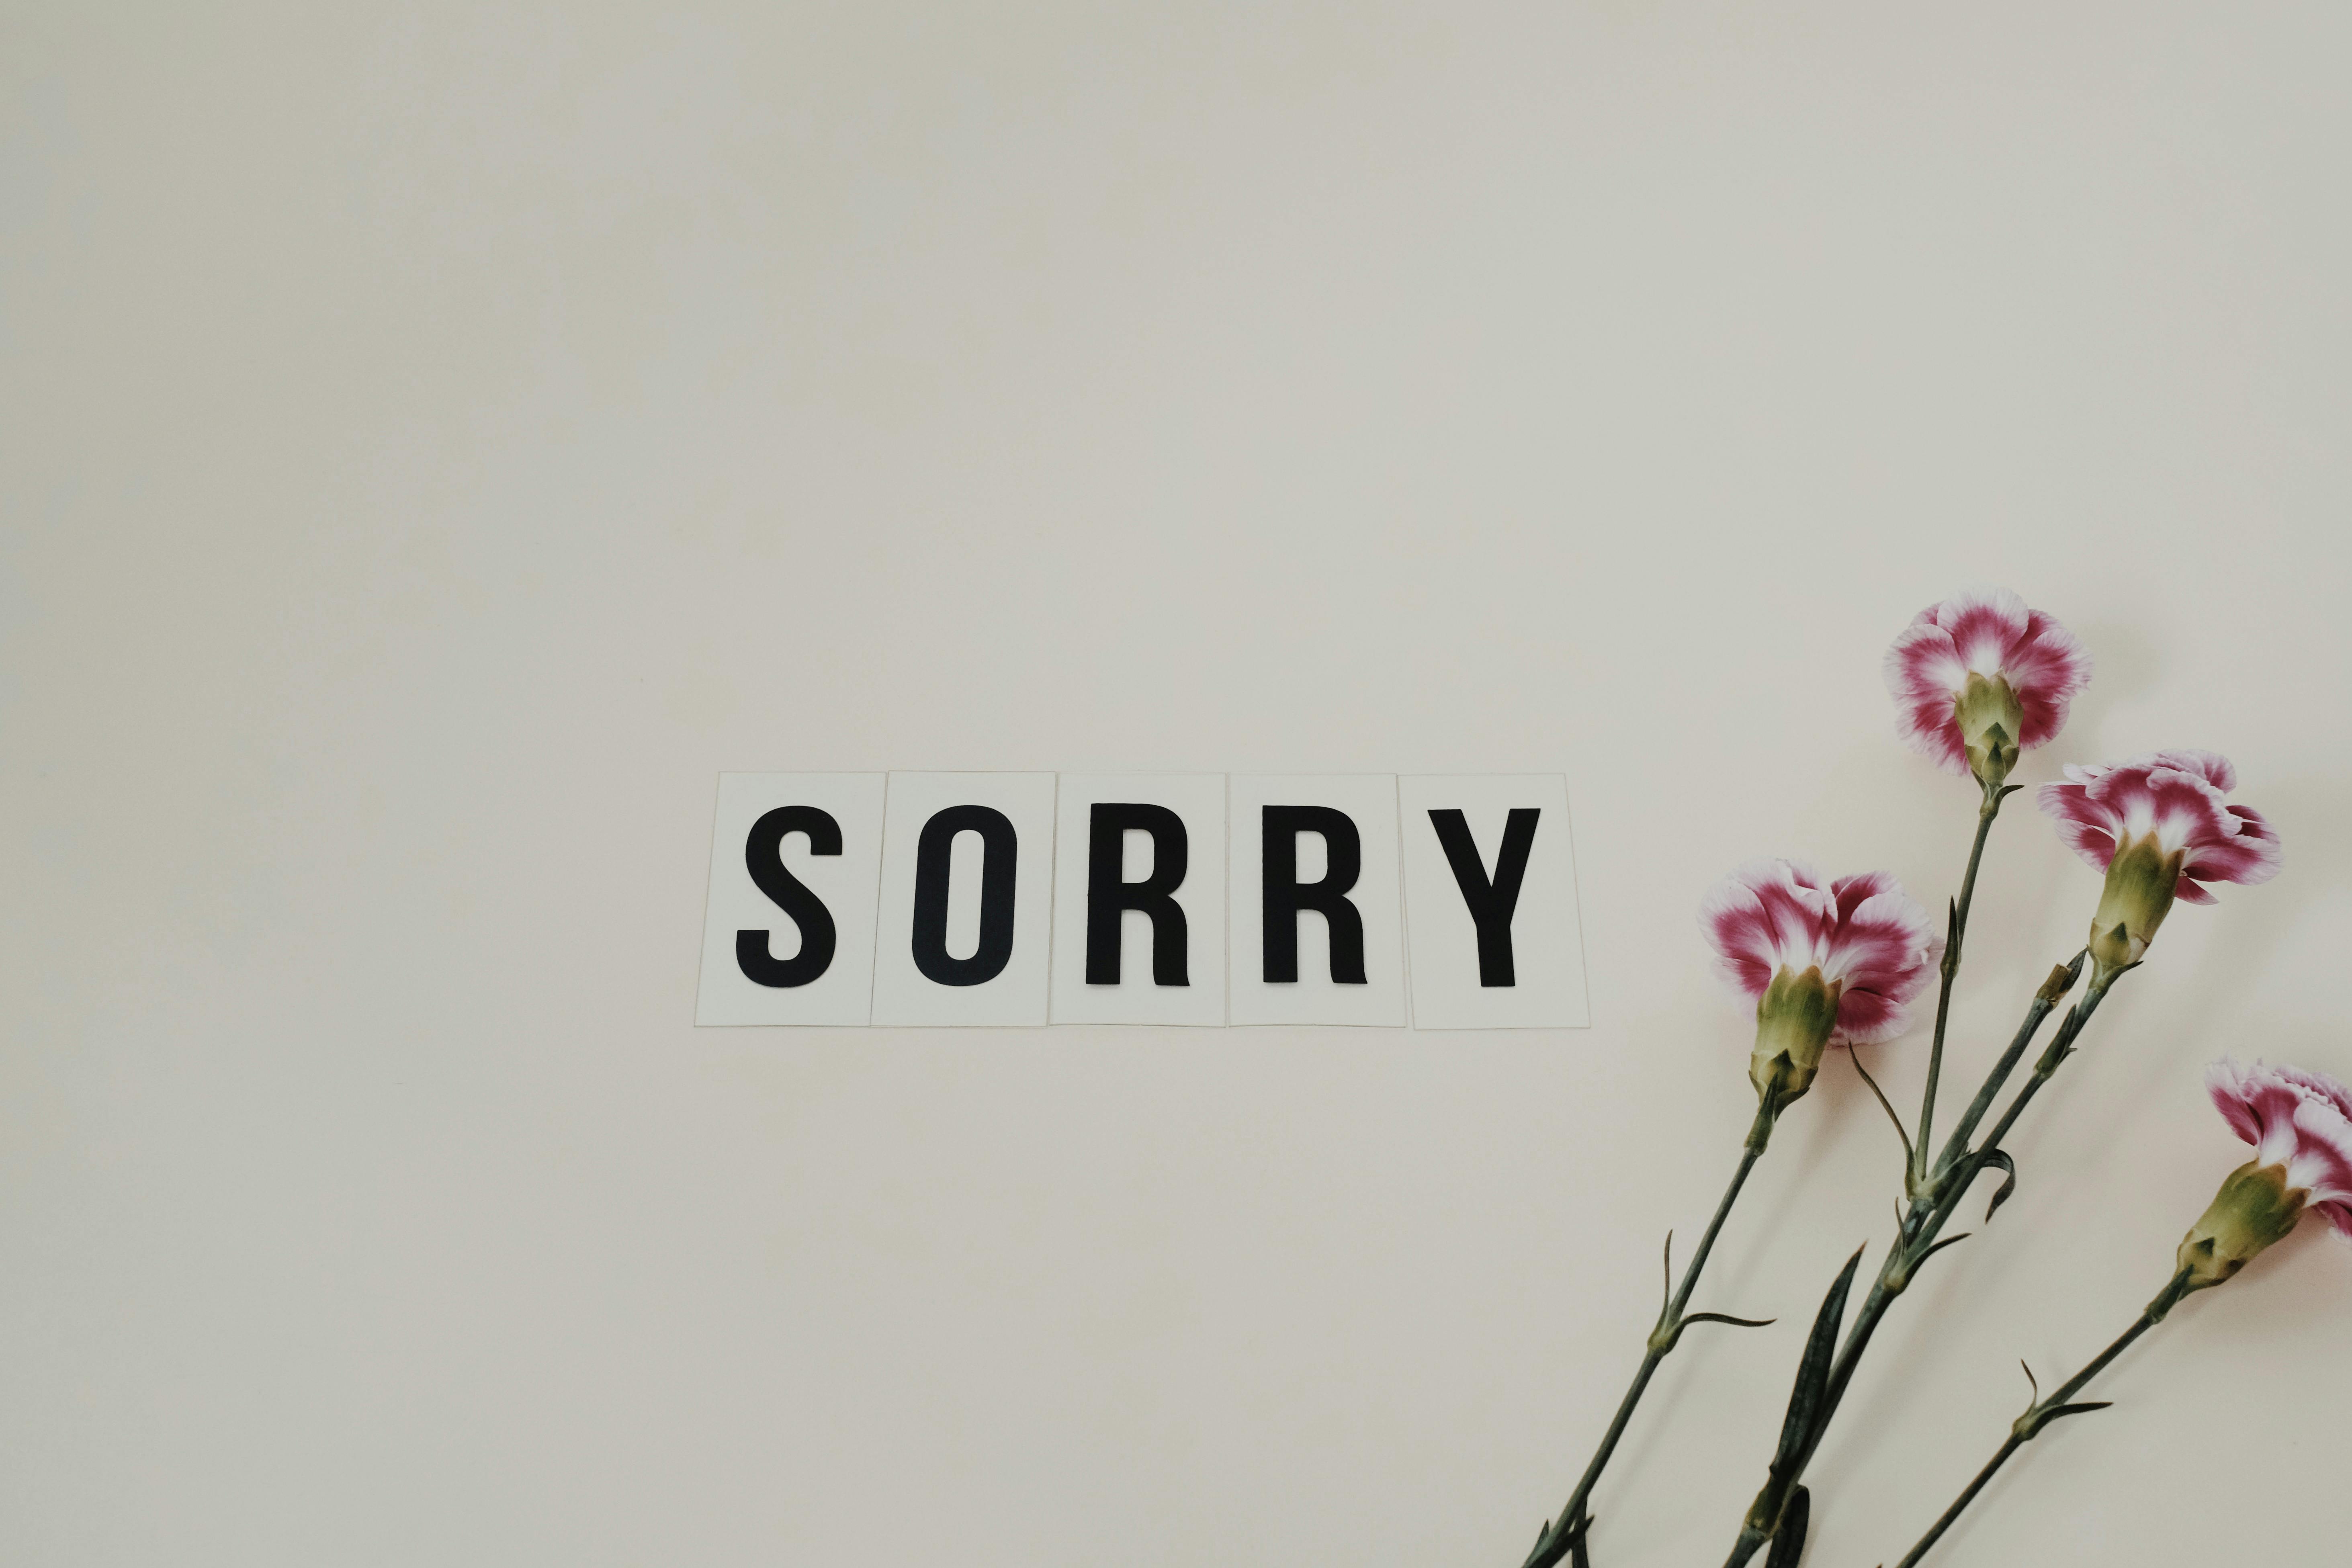 Pse disa njerëz nuk kërkojnë falje dhe kur janë gabim